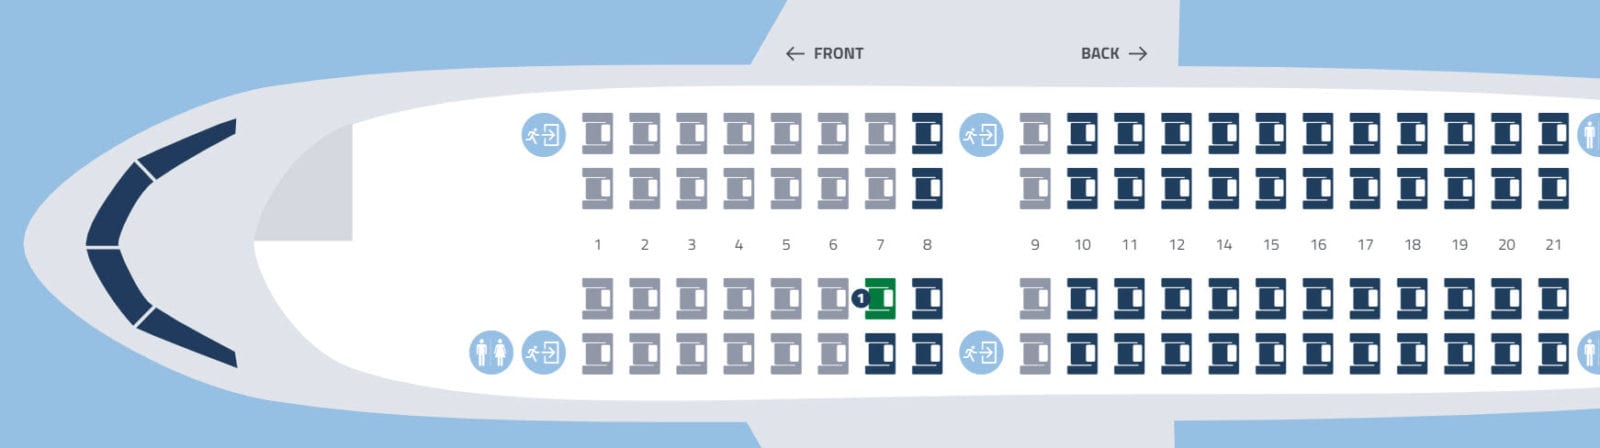 La Compagnie 2 x 2 seat configuration